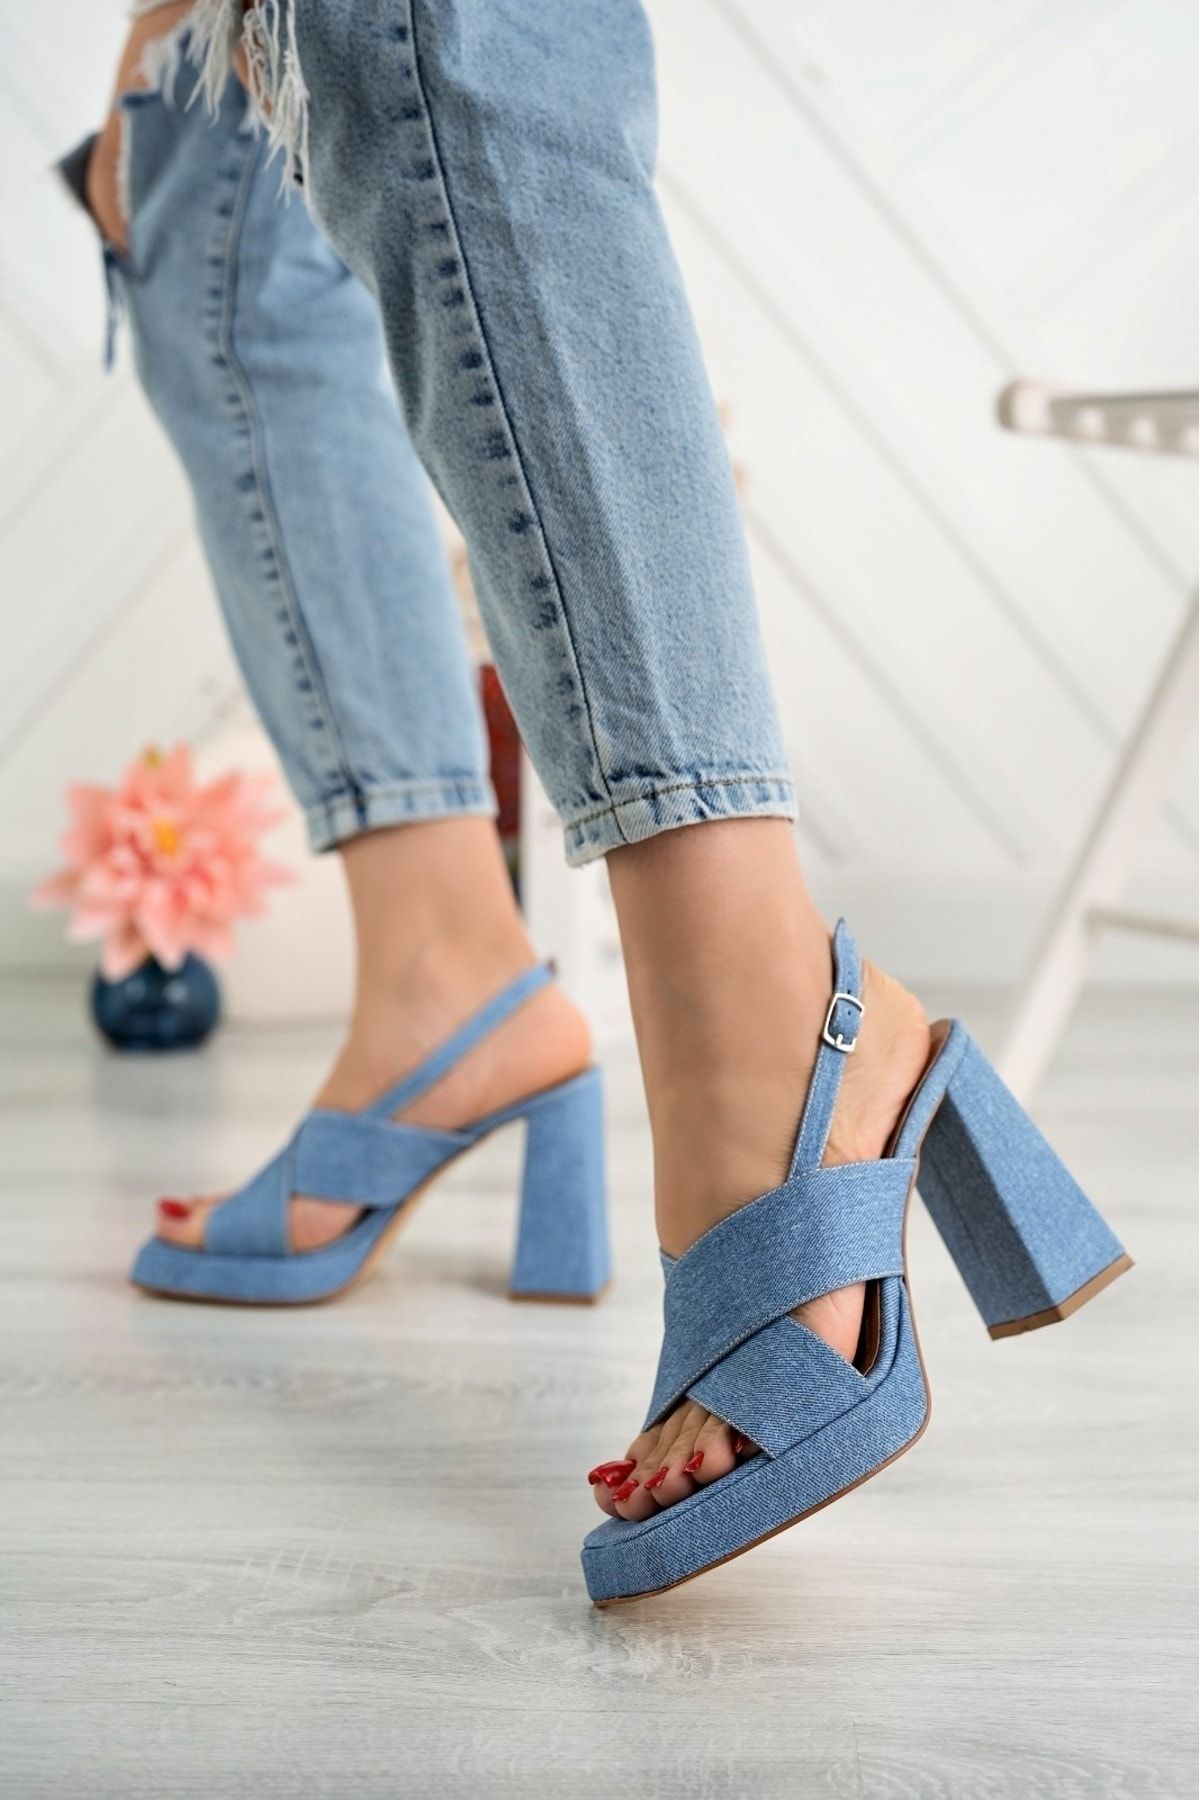 rahad moda Kadın Kot Platform Yüksek Kalın Topuklu Ayakkabı